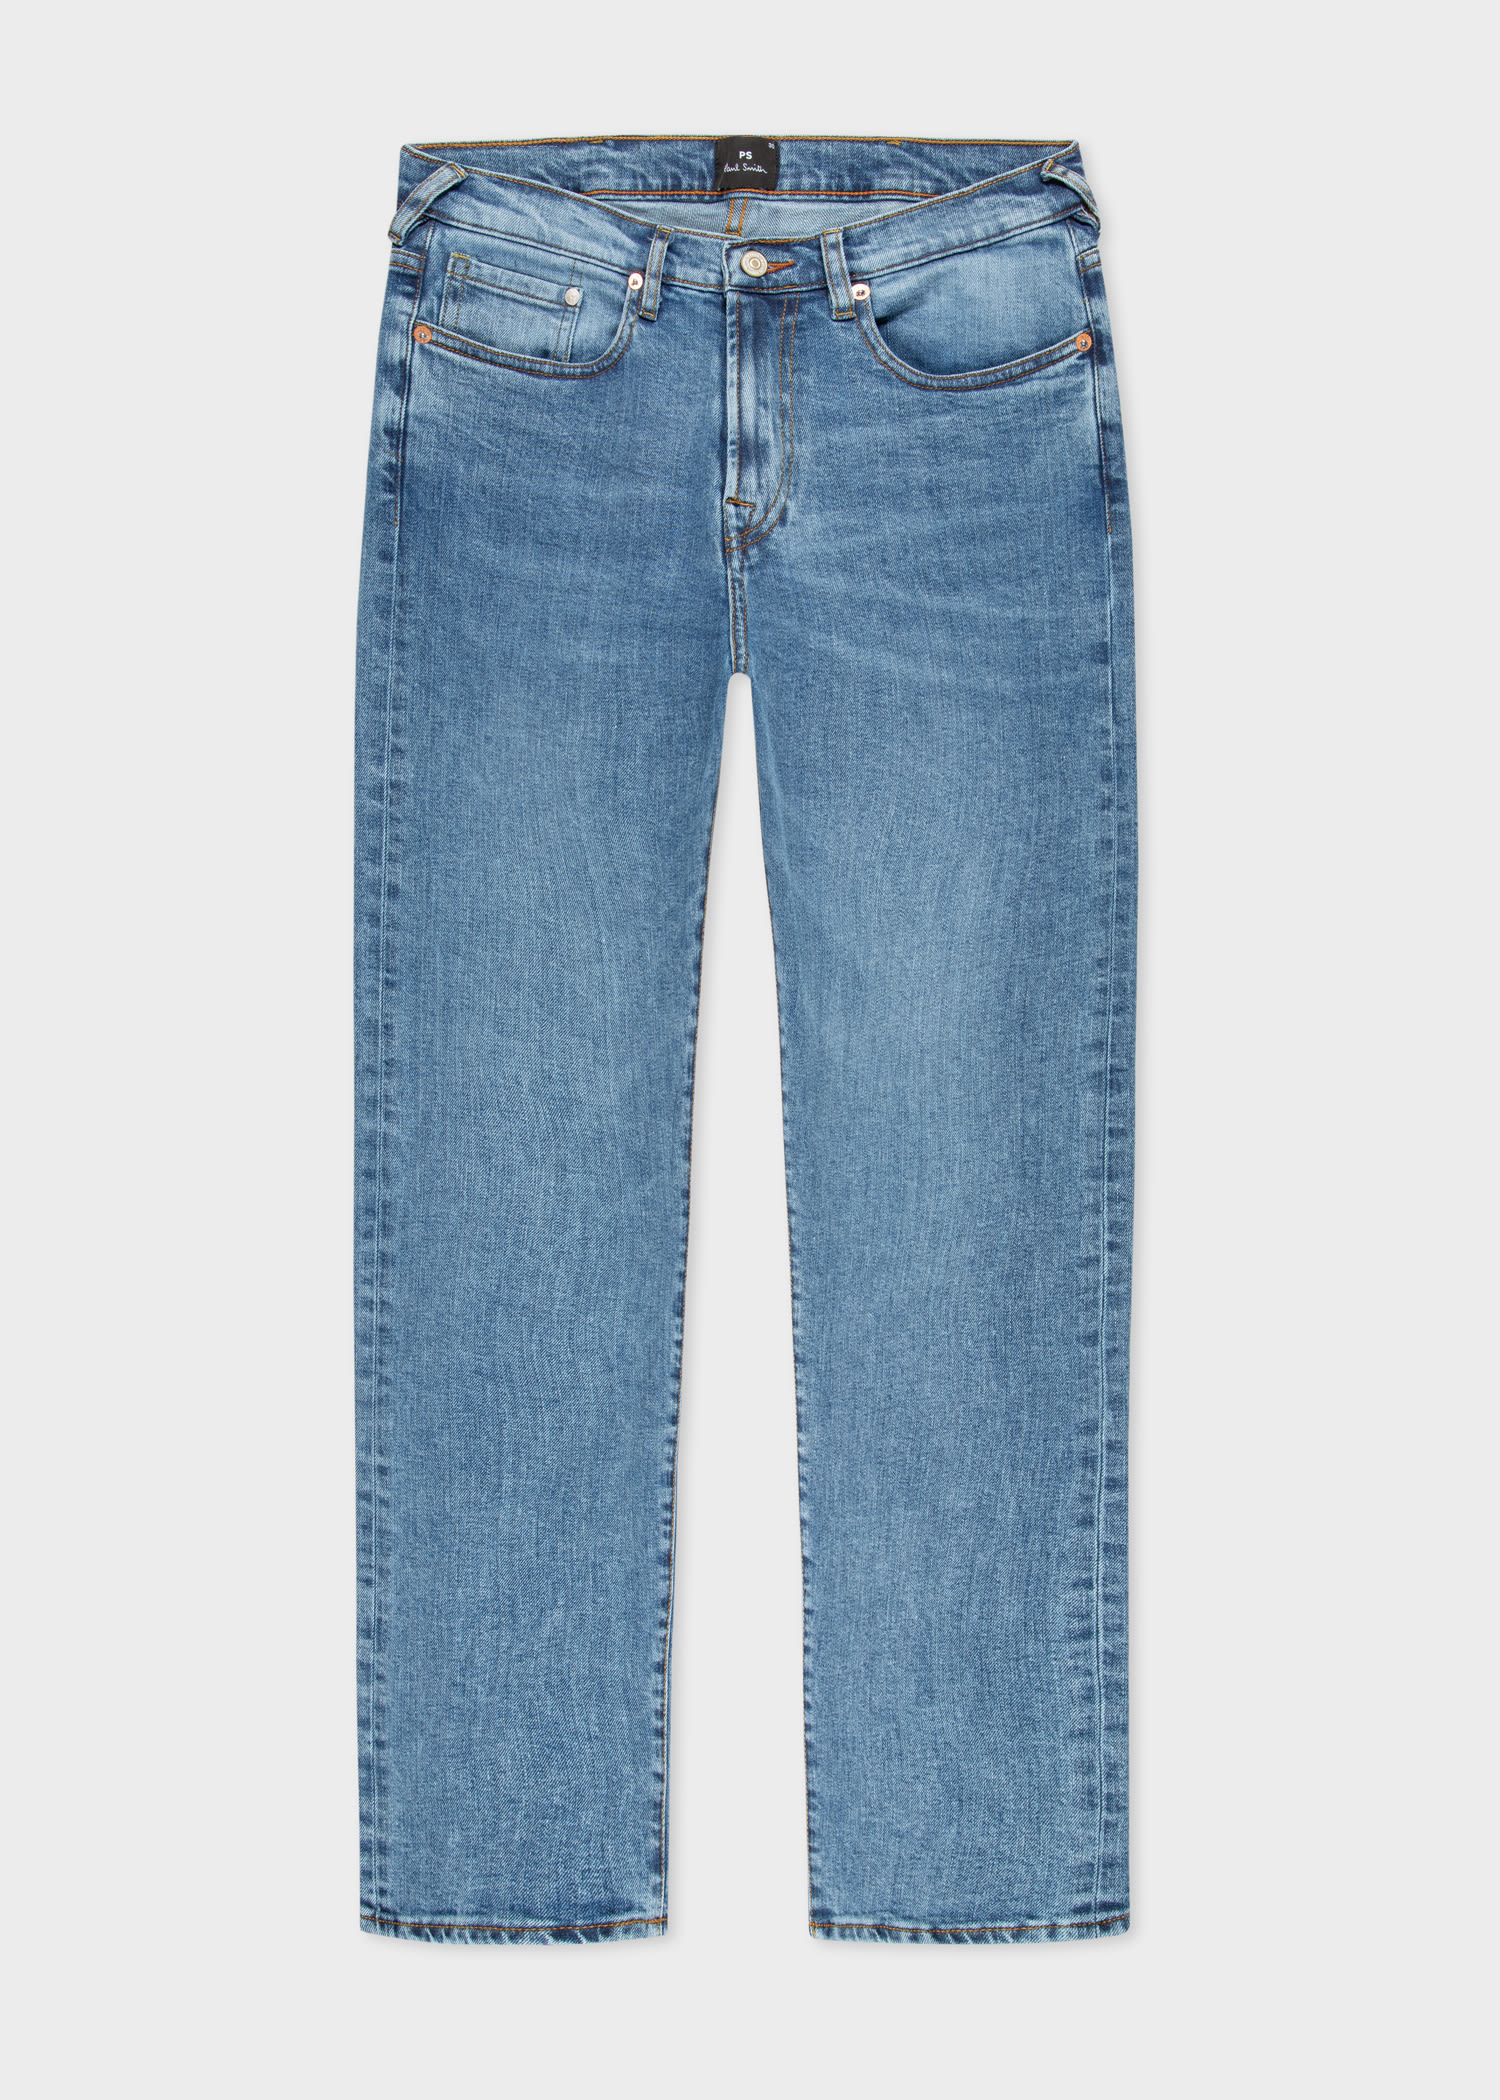 Men's Designer Jeans | Stretch, Skinny & Slim Fit - Paul Smith